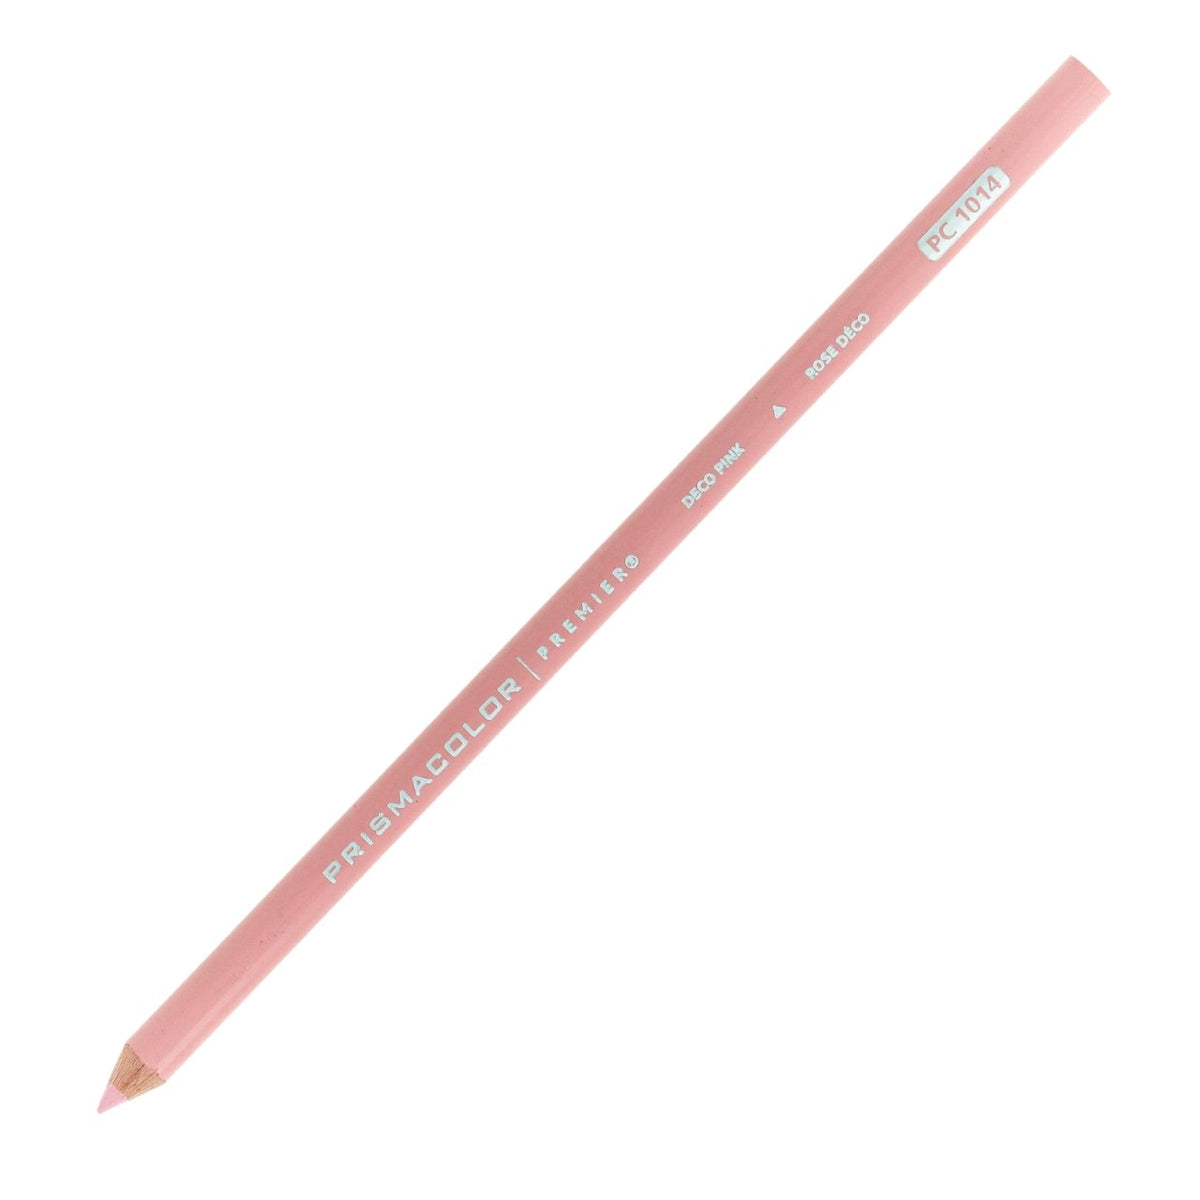 Prismacolor Premier Colored Pencil - Deco Pink 1014 - merriartist.com